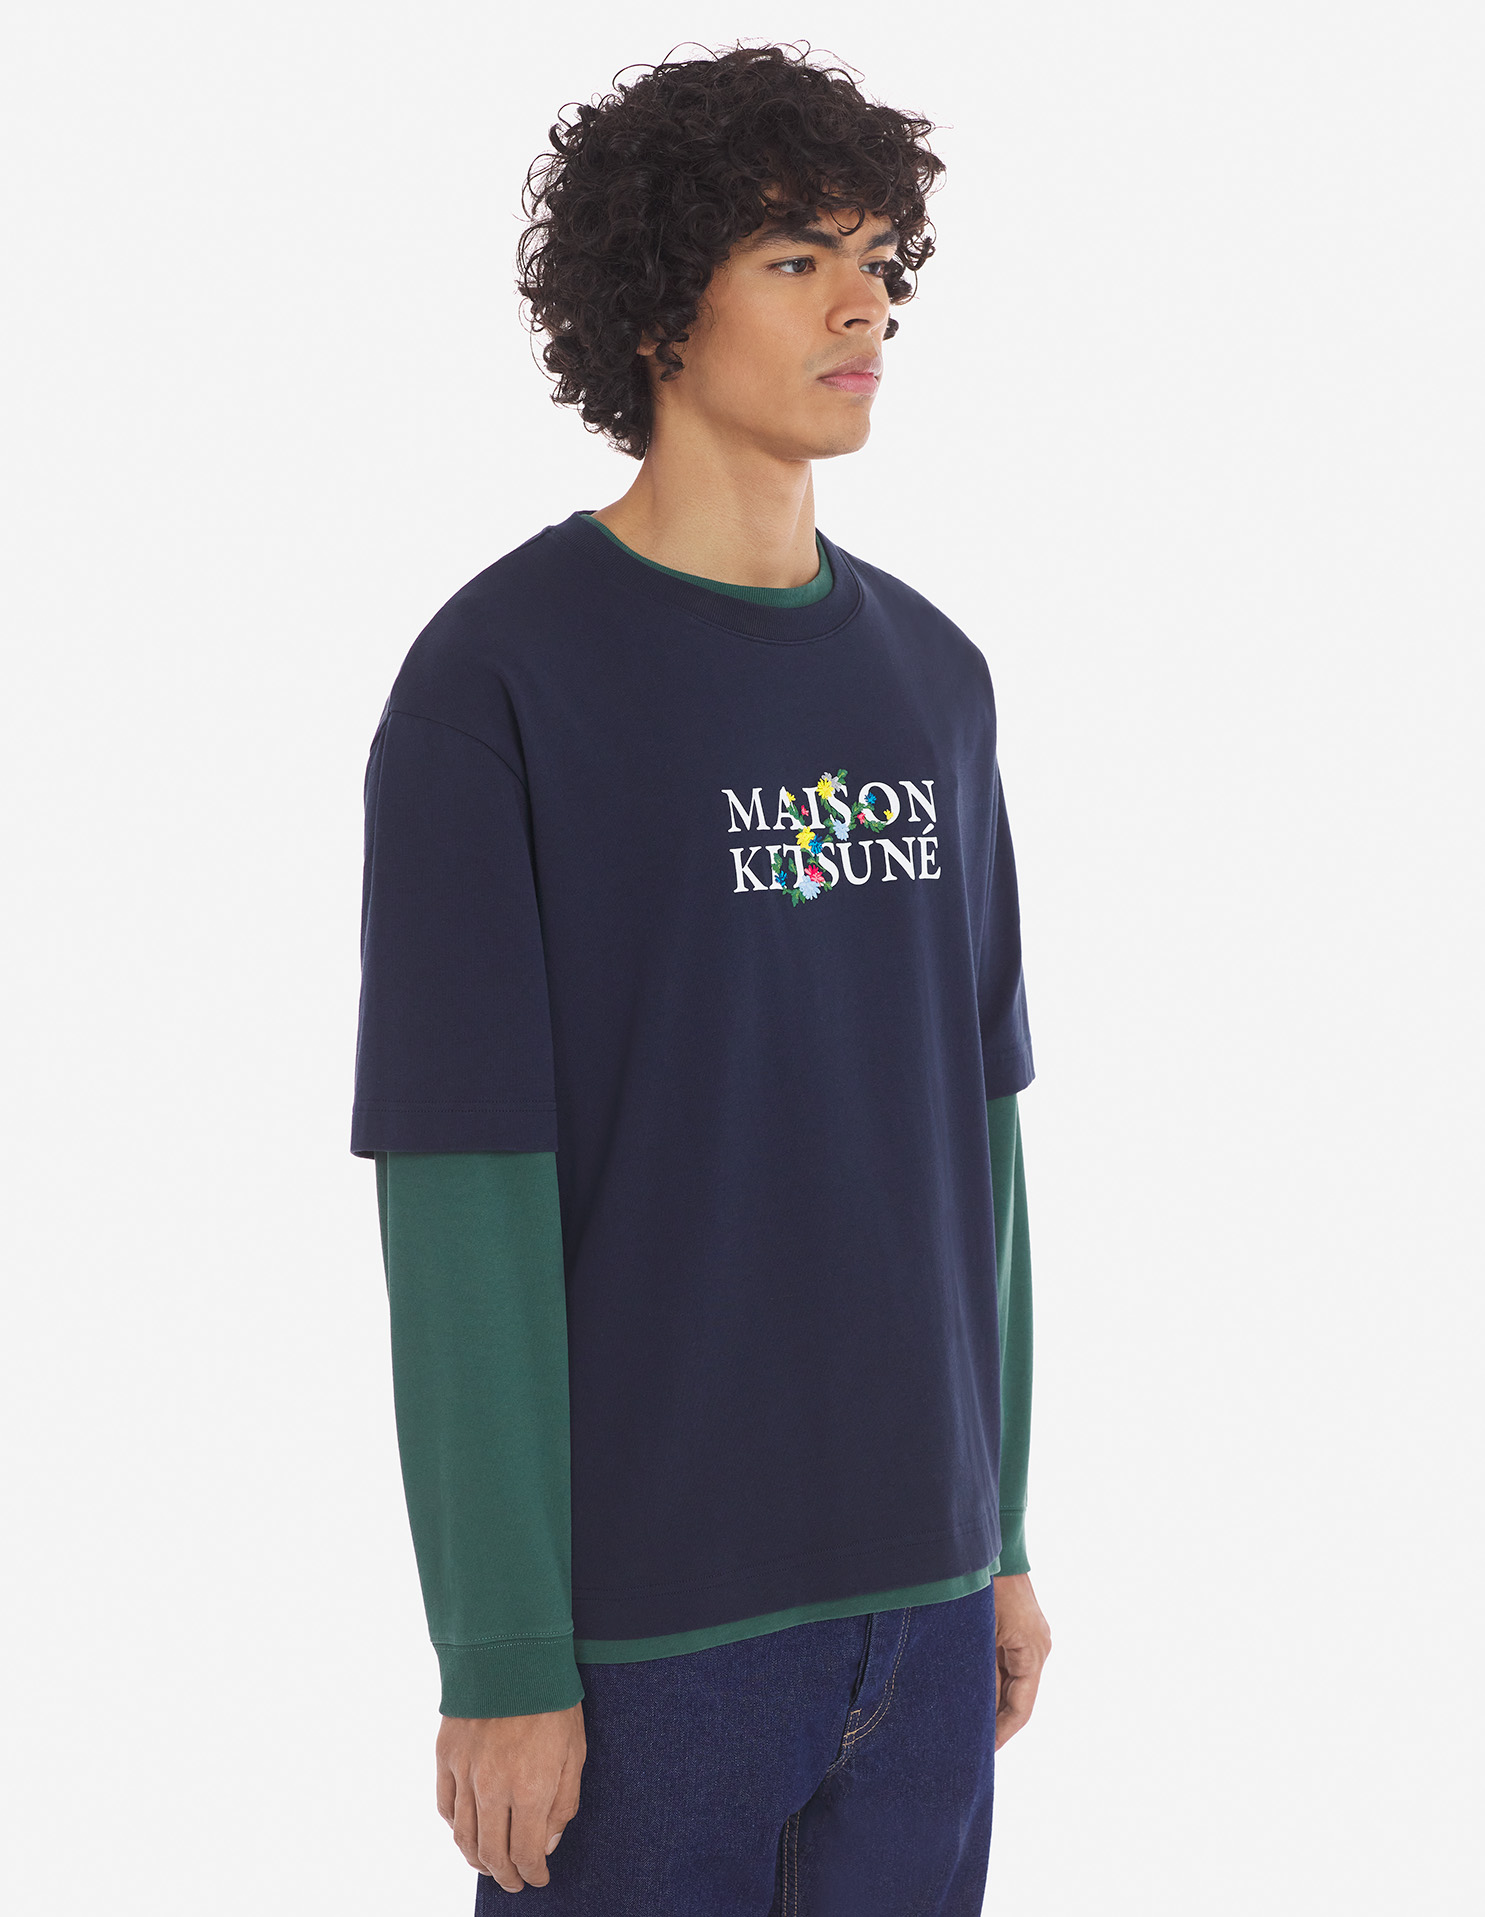 メゾン キツネ フラワーズ オーバーサイズ Tシャツ | Maison Kitsuné